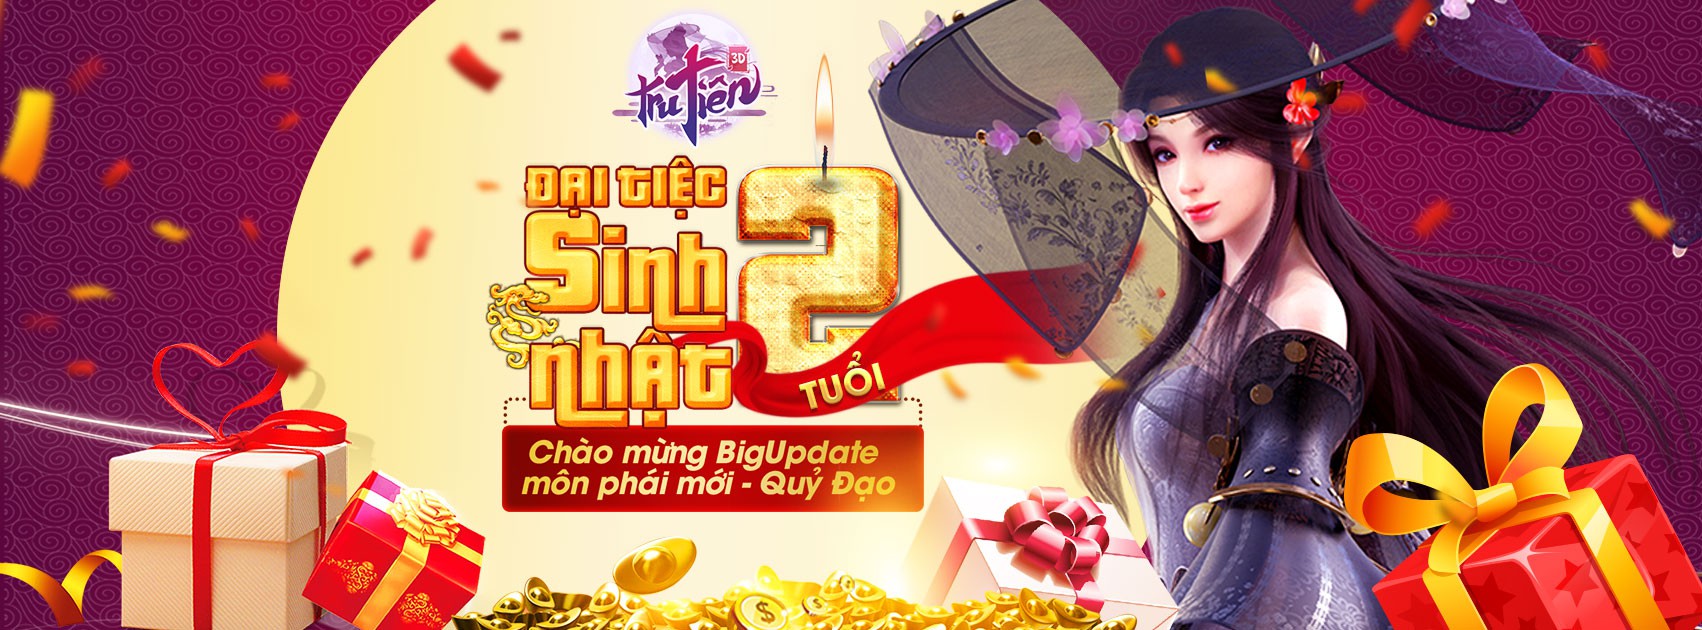 Hải Tặc Đại Chiến   CHÚC MỪNG SINH NHẬT HUYỀN THOẠI HẢI TẶC TRÒN 1 TUỔI    Mừng sinh nhật Game One Piece Số 1 Việt Nam  Huyền Thoại